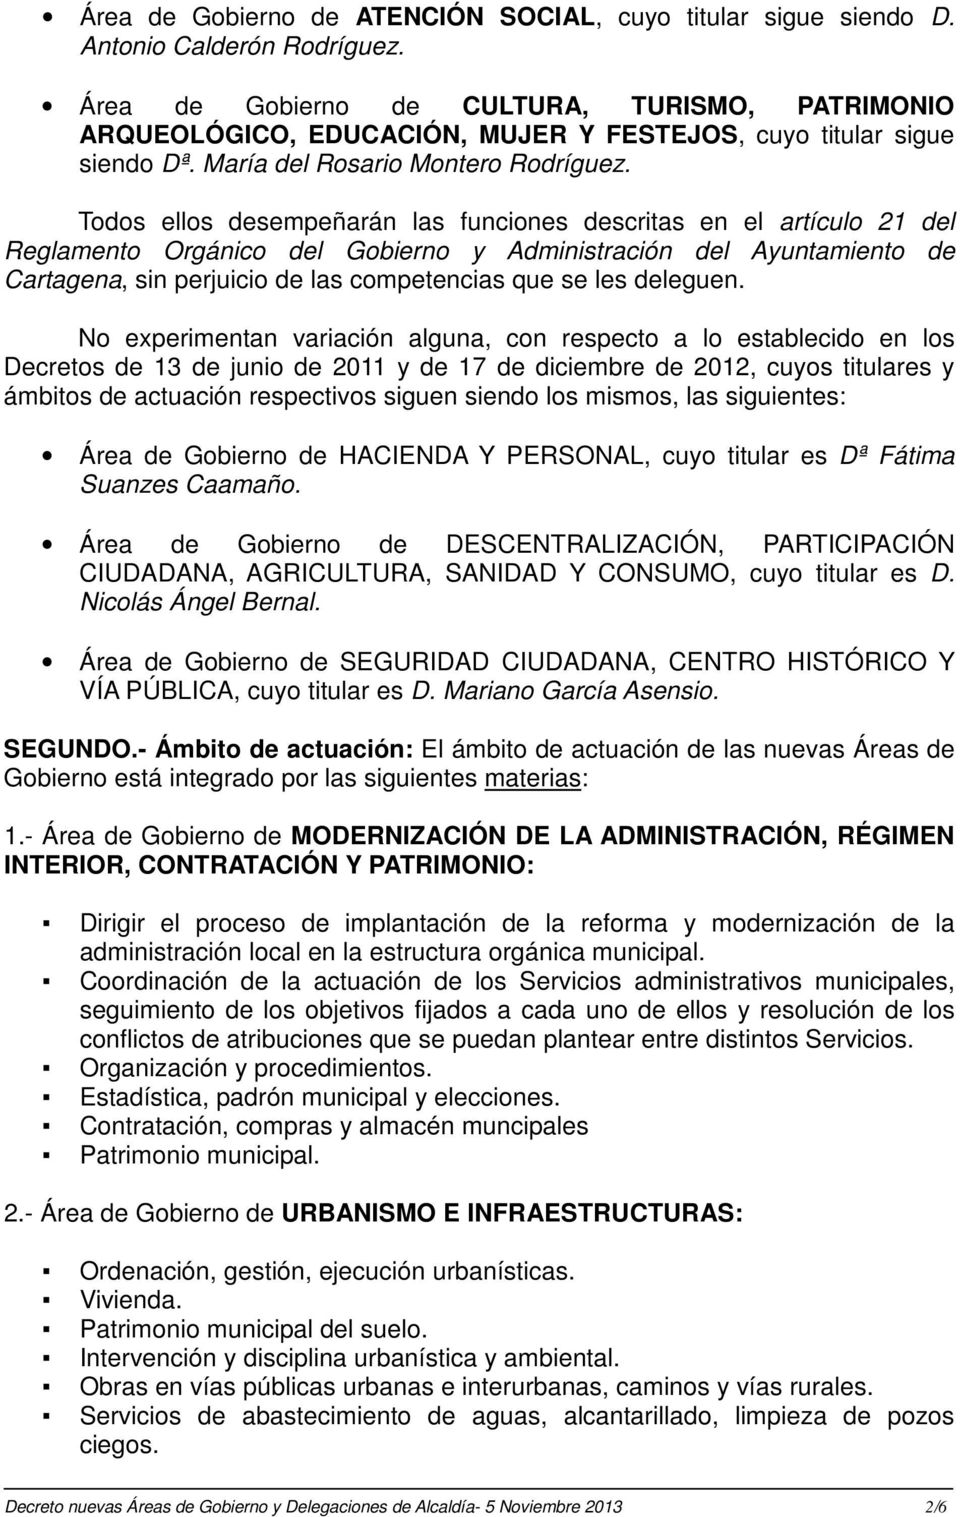 Todos ellos desempeñarán las funciones descritas en el artículo 21 del Reglamento Orgánico del Gobierno y Administración del Ayuntamiento de Cartagena, sin perjuicio de las competencias que se les